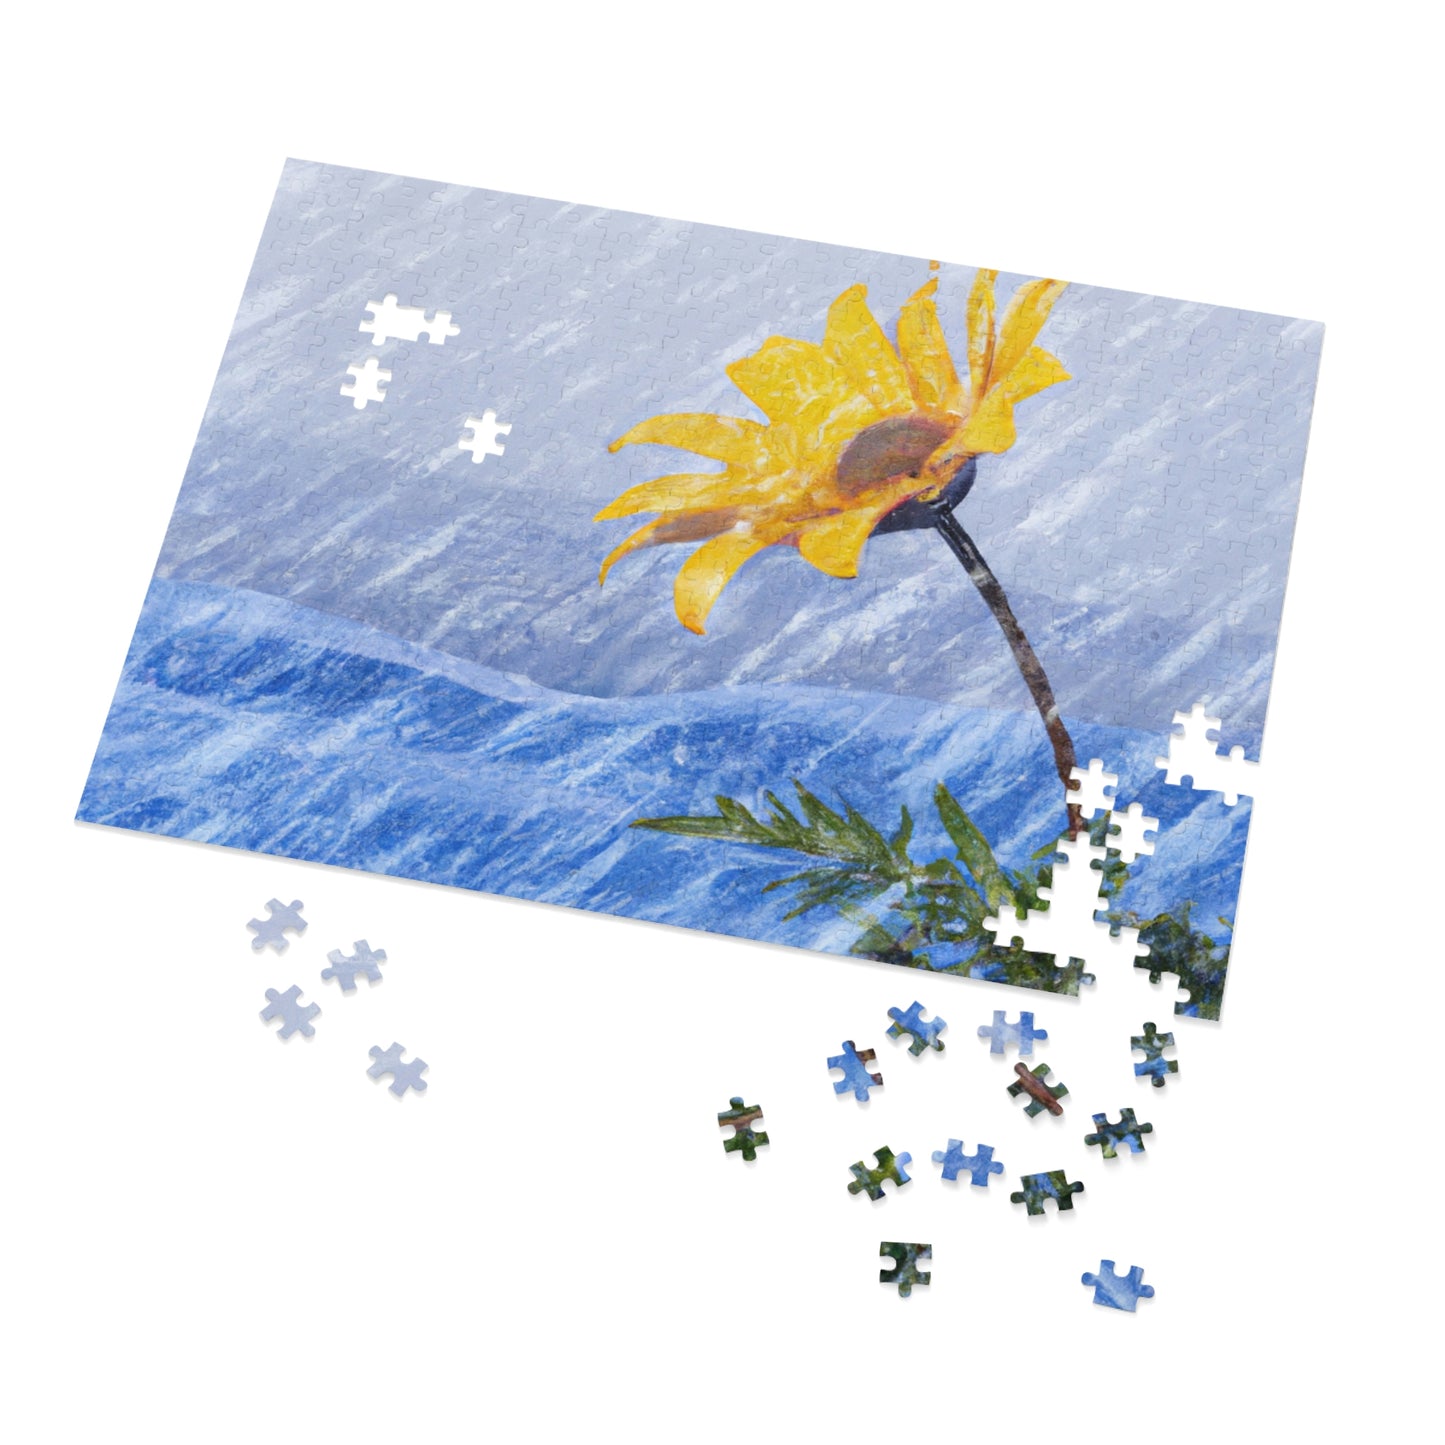 "Un estallido de color en el blanco reluciente: el milagro de una flor que florece en una tormenta de nieve" - ​​The Alien Jigsaw Puzzle